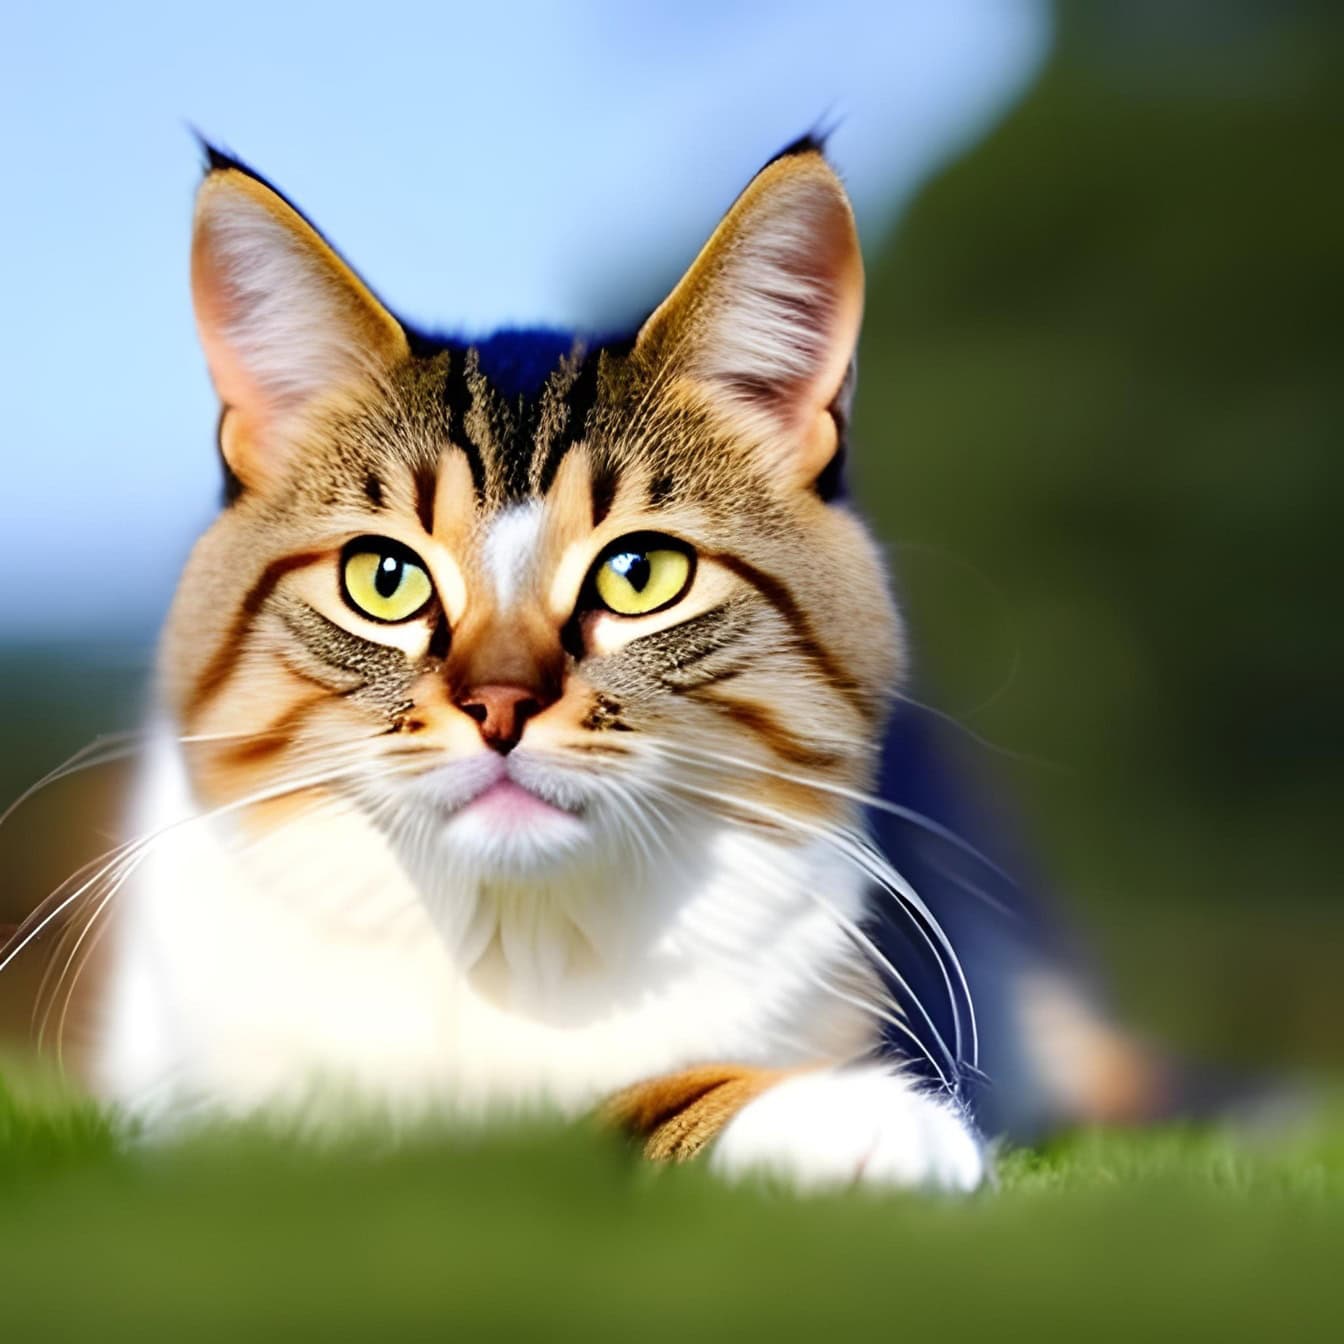 Nordamerikansk katt som ligger i gräset